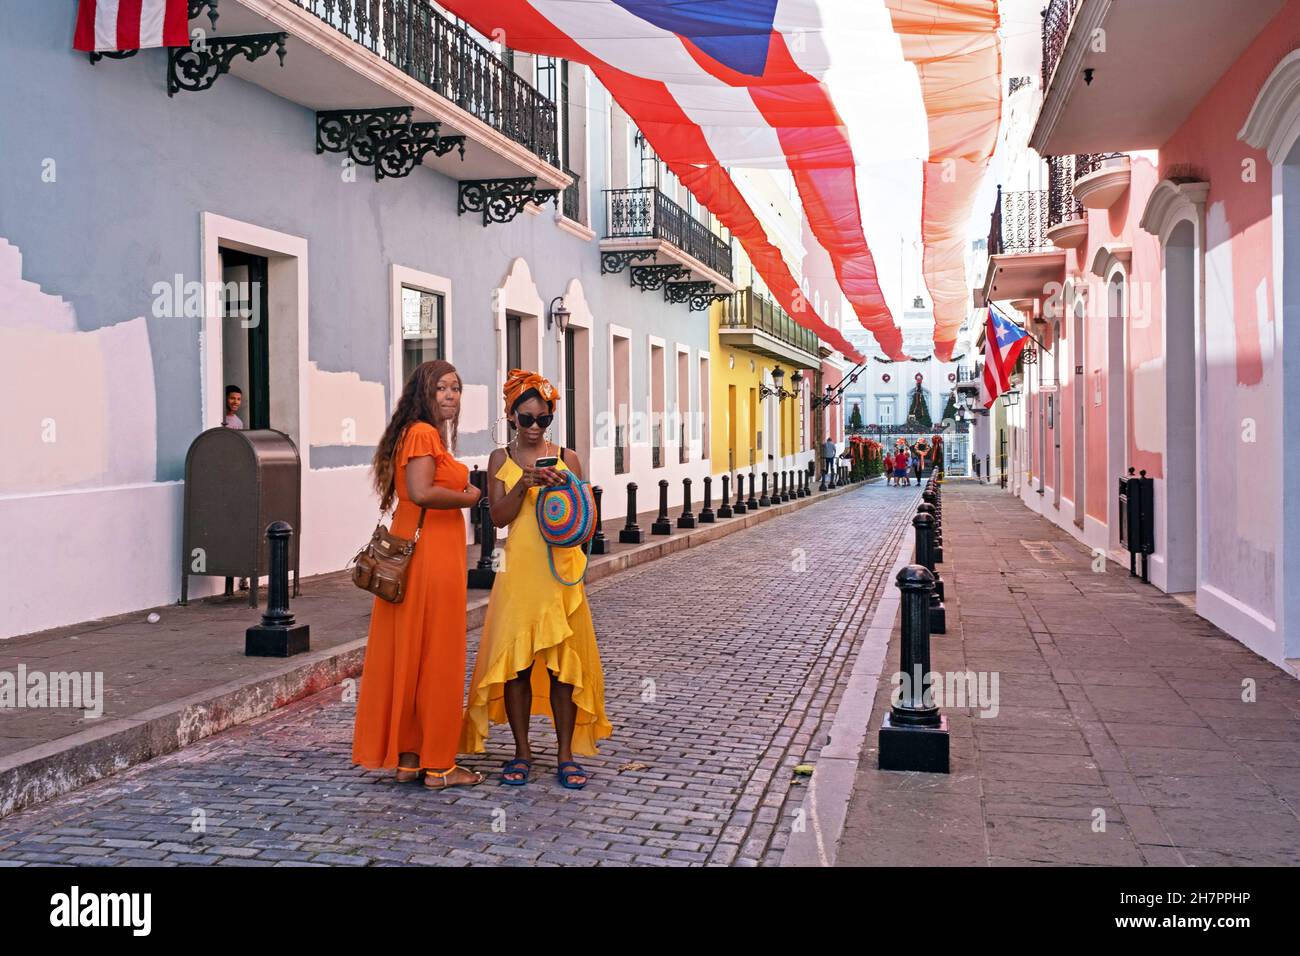 Puerto-ricanische Frauen in Old San Juan / Viejo San Juan, historisches Kolonialviertel in der Hauptstadt San Juan, Puerto Rico, Großantillen, Karibik Stockfoto